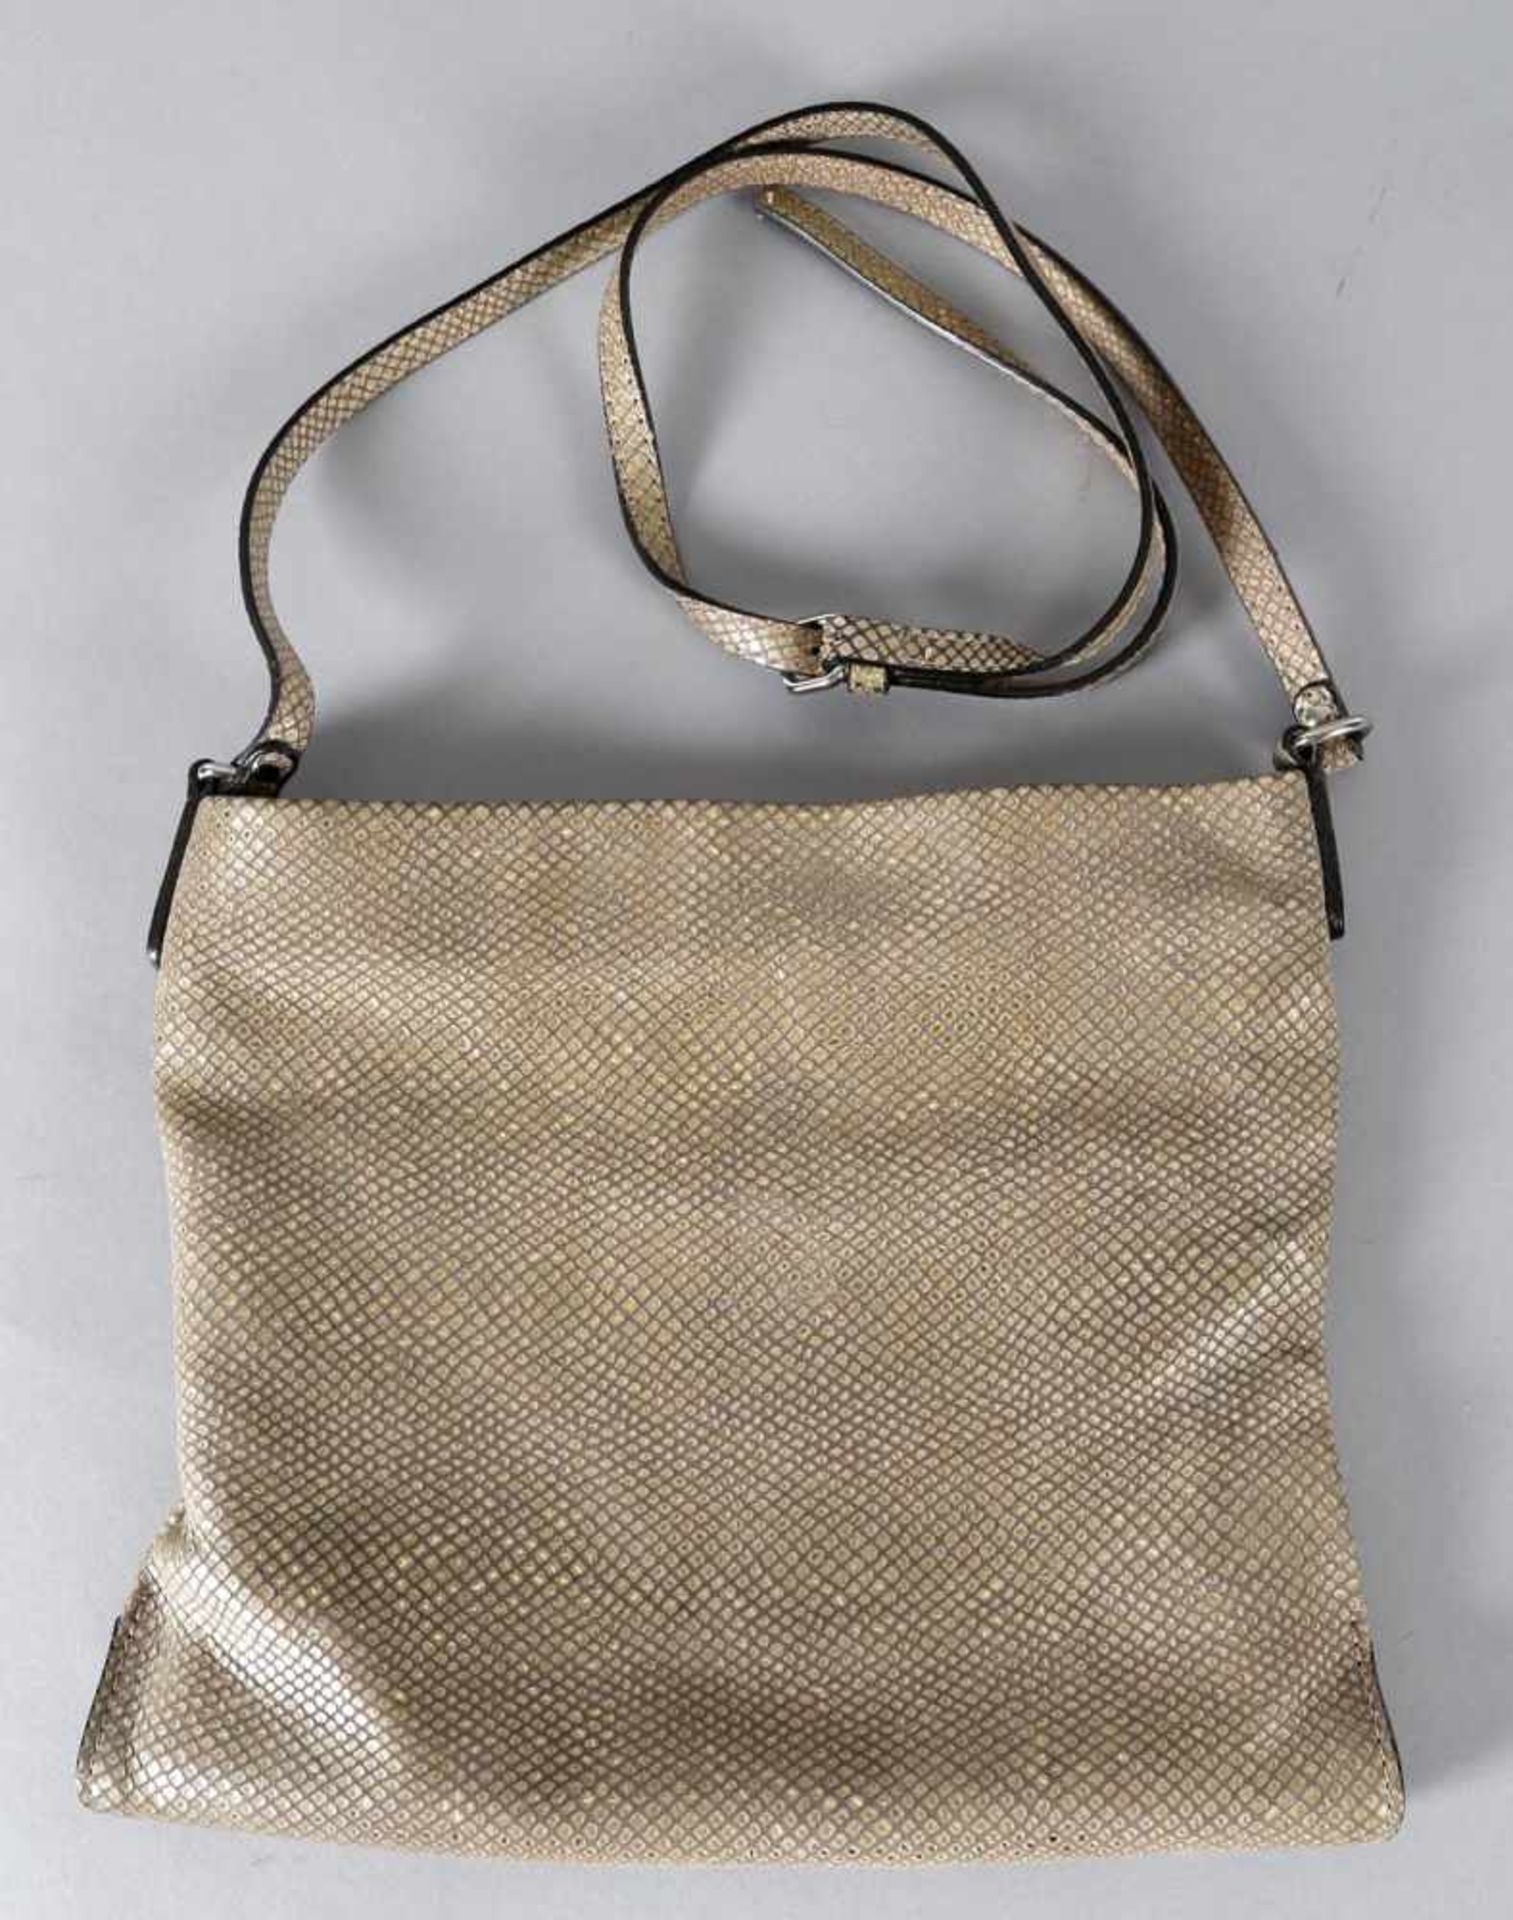 Handtasche, Gianni Chiarini, ItalienUmhängetasche aus Leder, gräulich-golden gemustert,